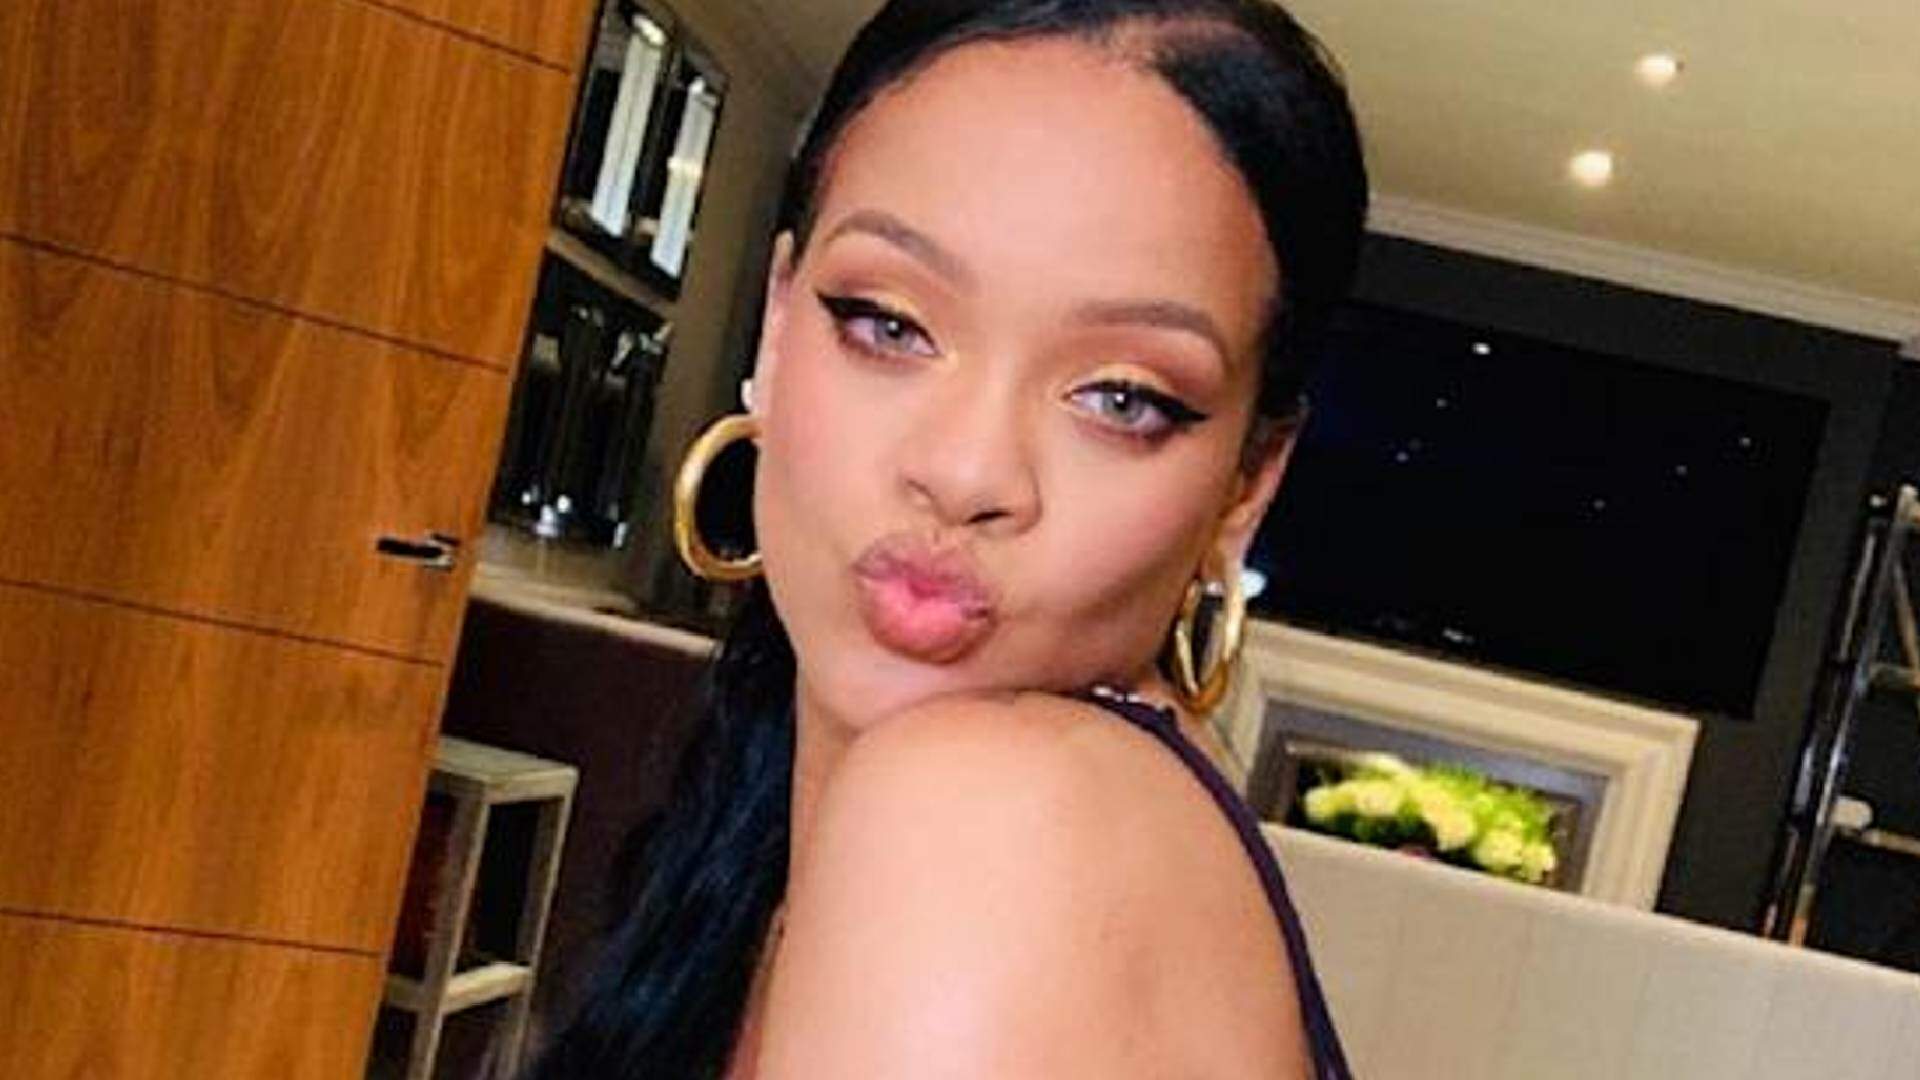 Show de intervalo no Super Bowl, previsão de Márcia Sensitiva e mais: 2023 será o ano de Rihanna? - Metropolitana FM